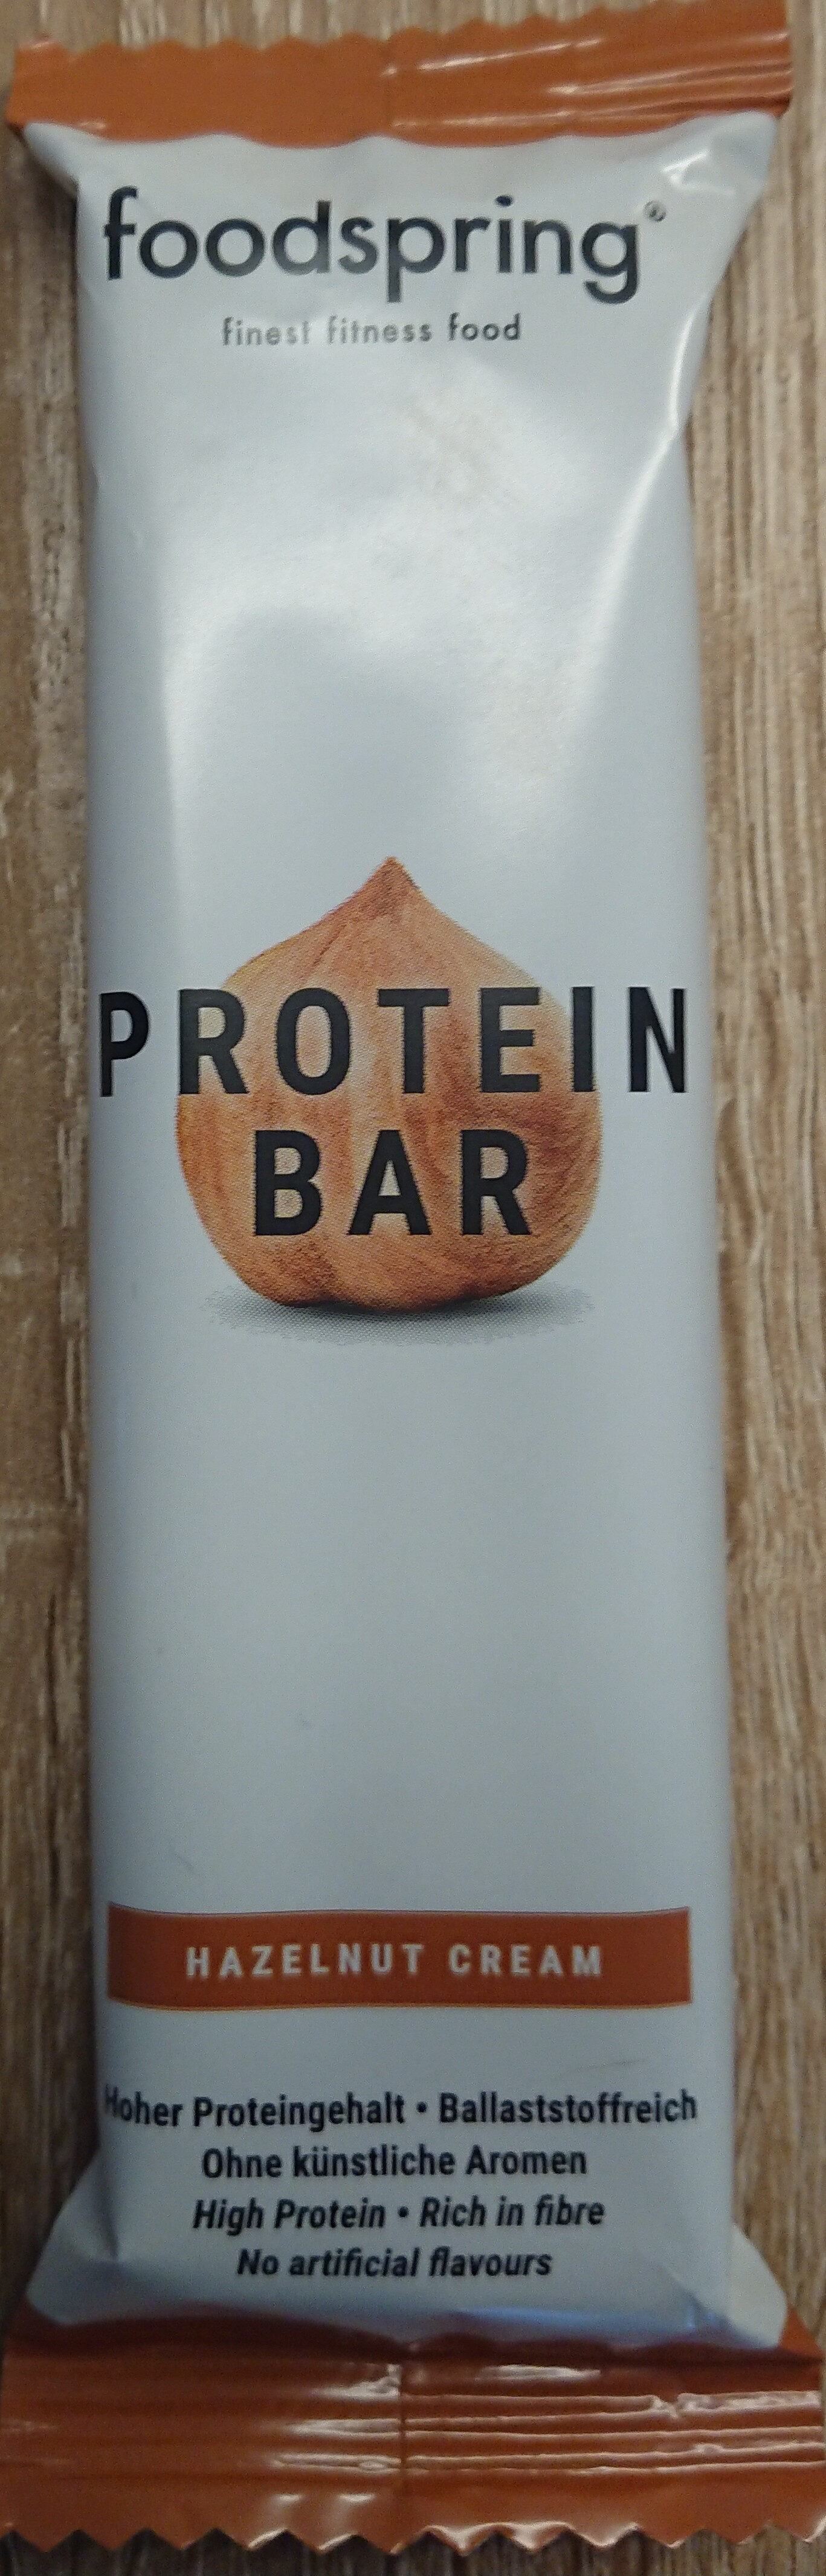 Protein Bar Halzenut Cream - Produkt